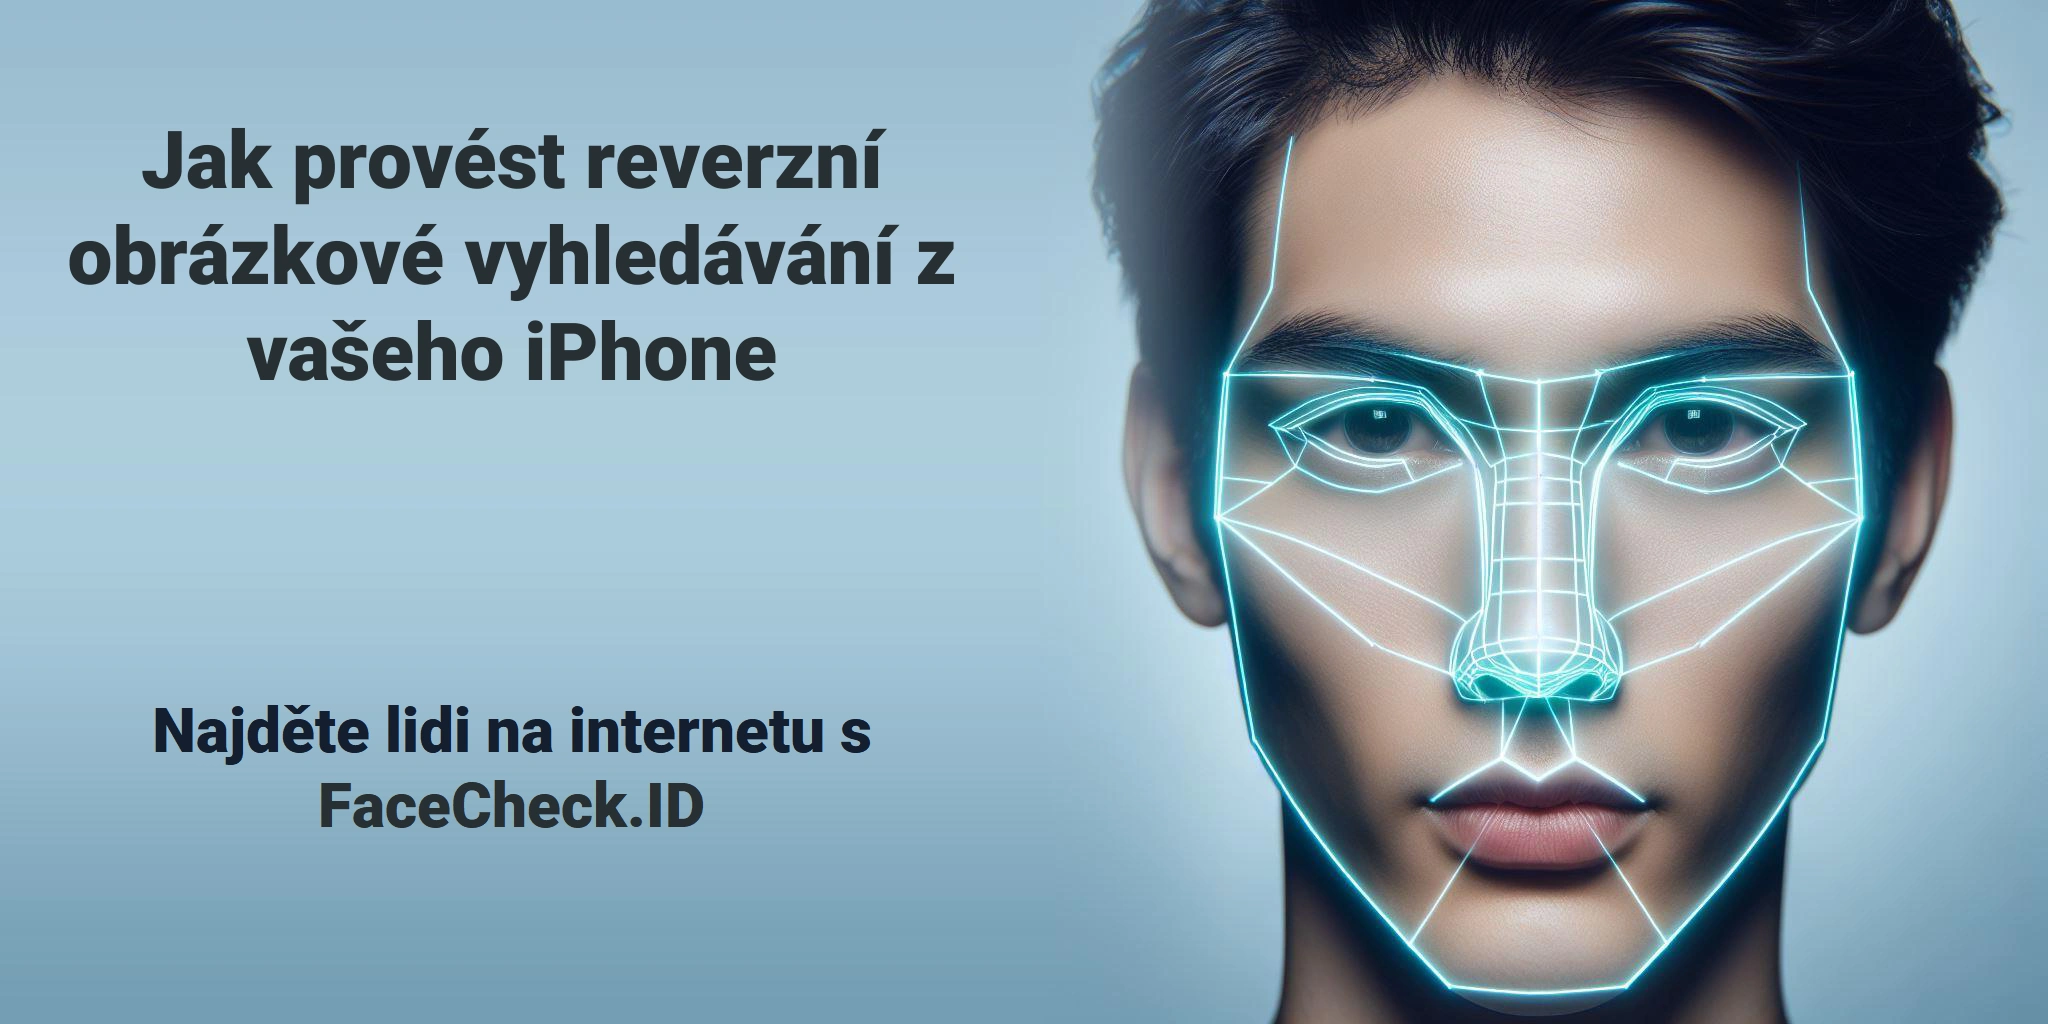 Jak provést reverzní obrázkové vyhledávání z vašeho iPhone Najděte lidi na internetu s FaceCheck.ID